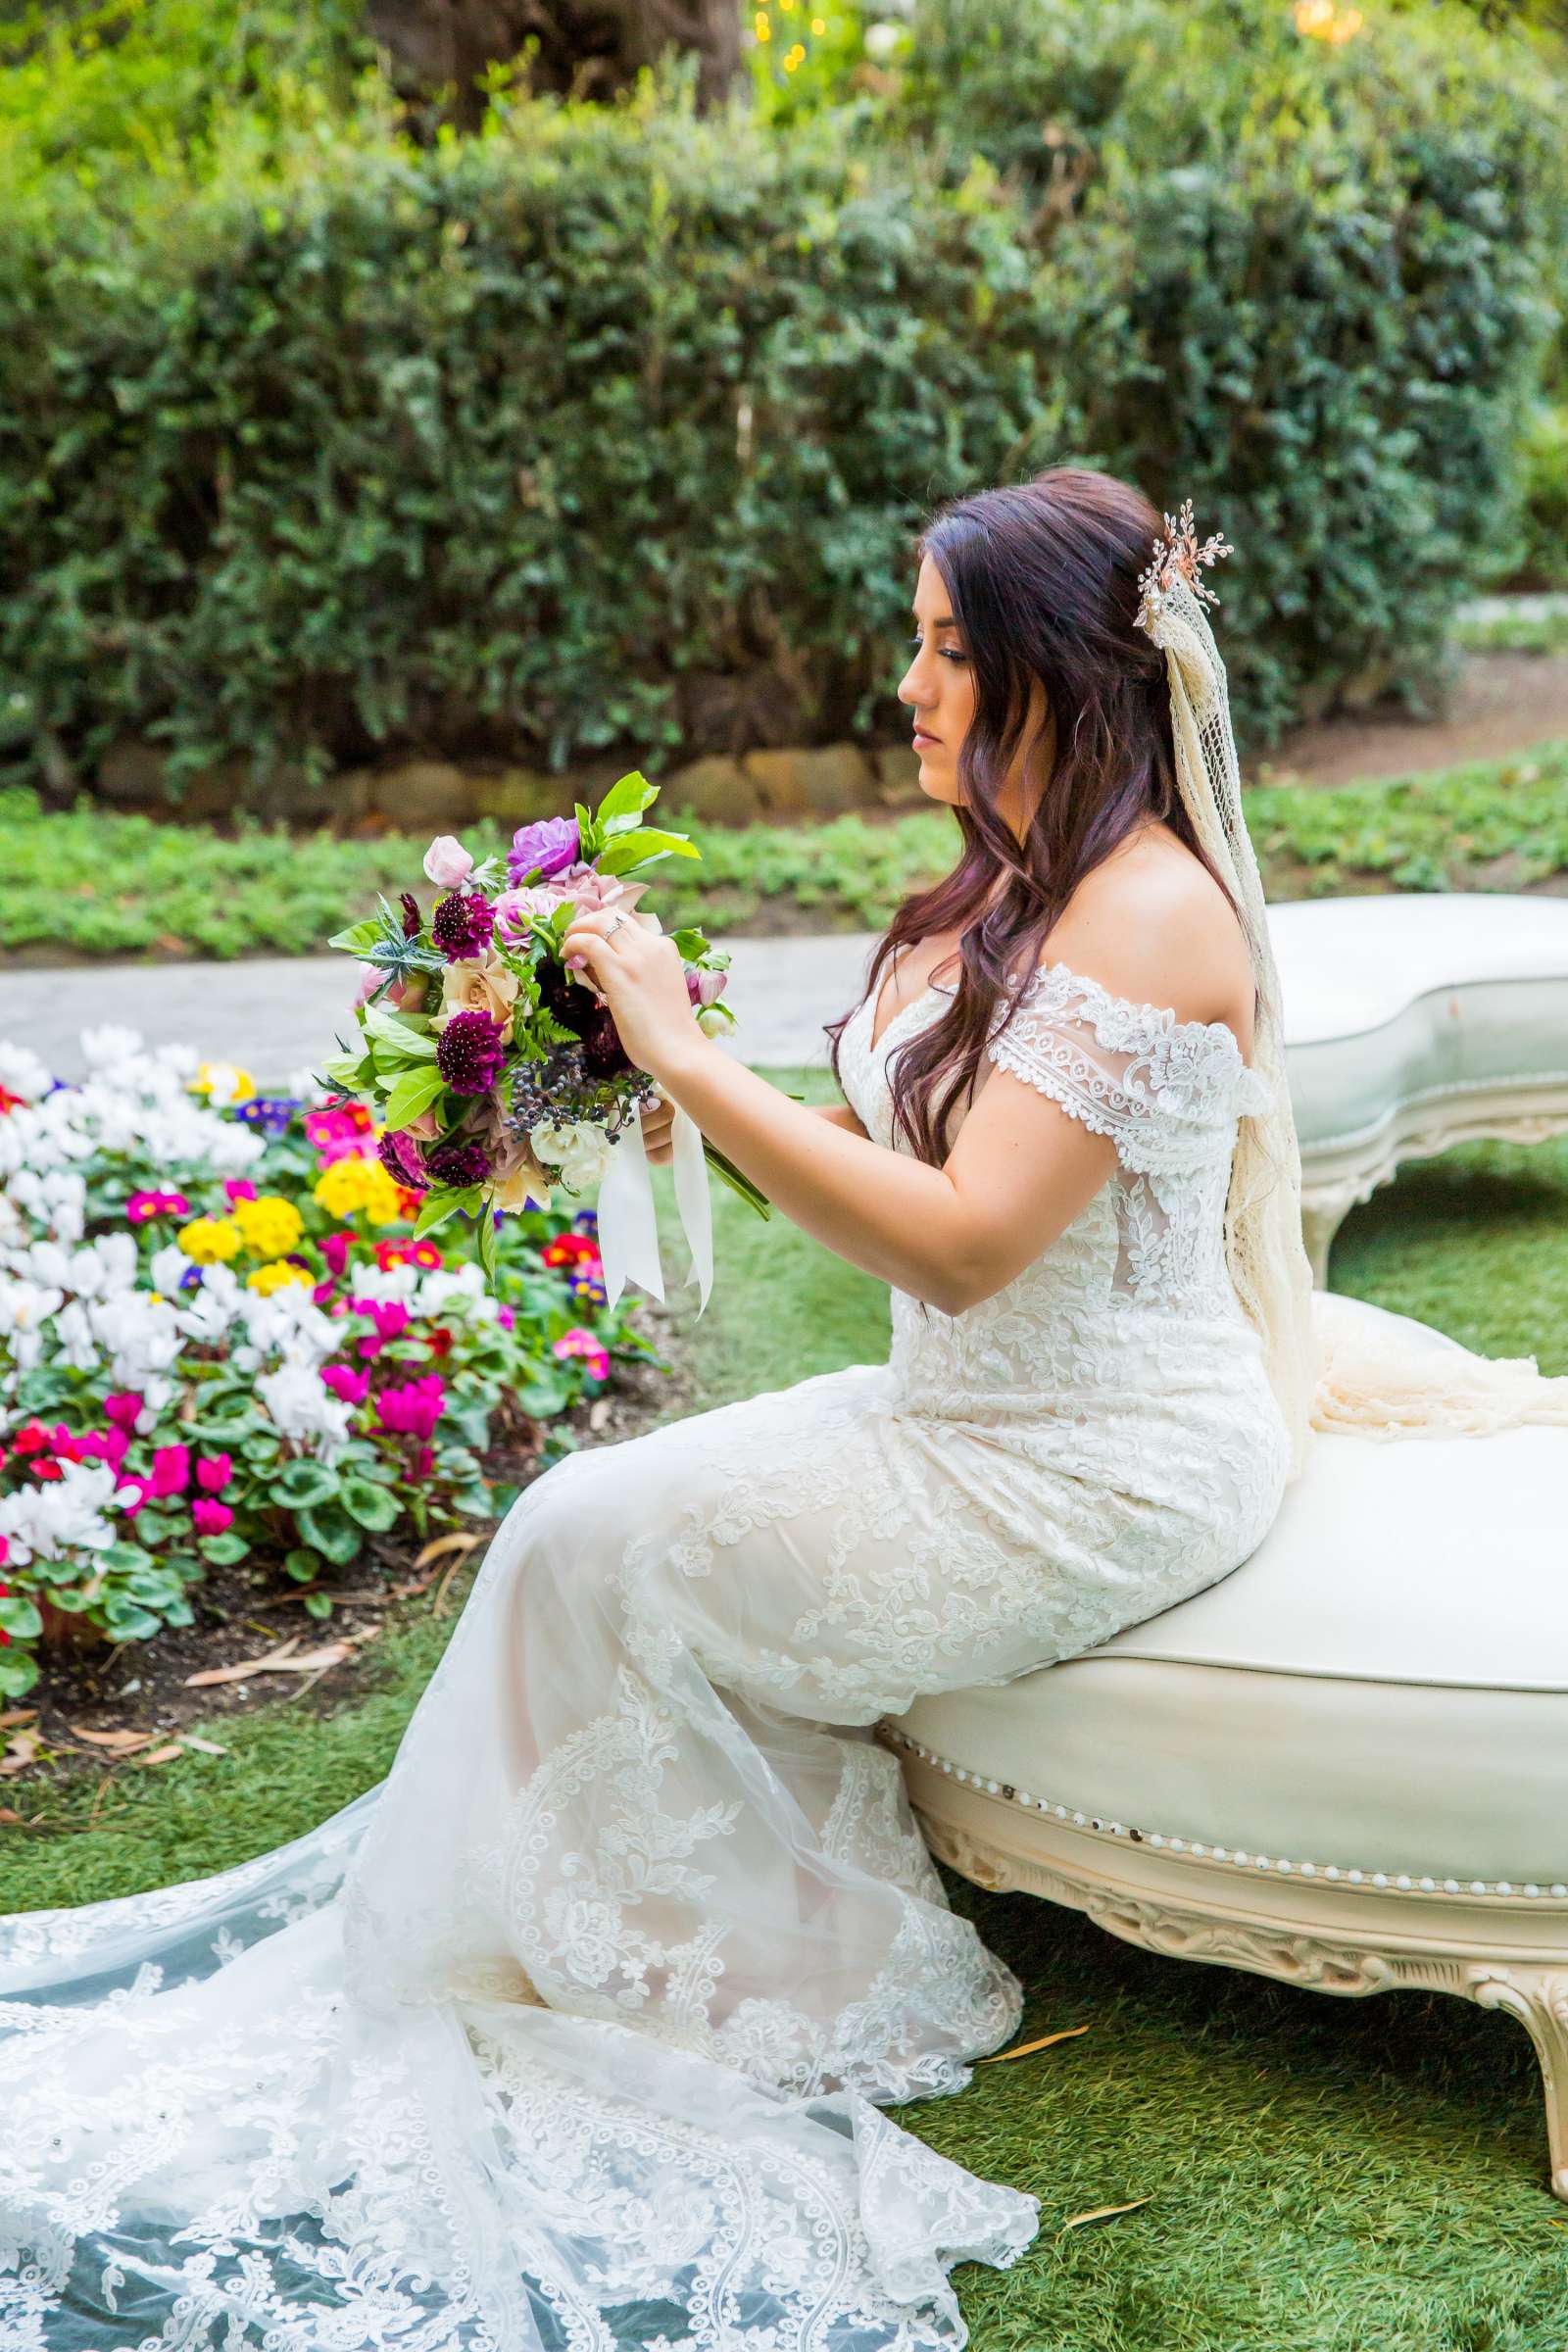 Twin Oaks House & Gardens Wedding Estate Wedding, Stephanie and Ilija Wedding Photo #115 by True Photography